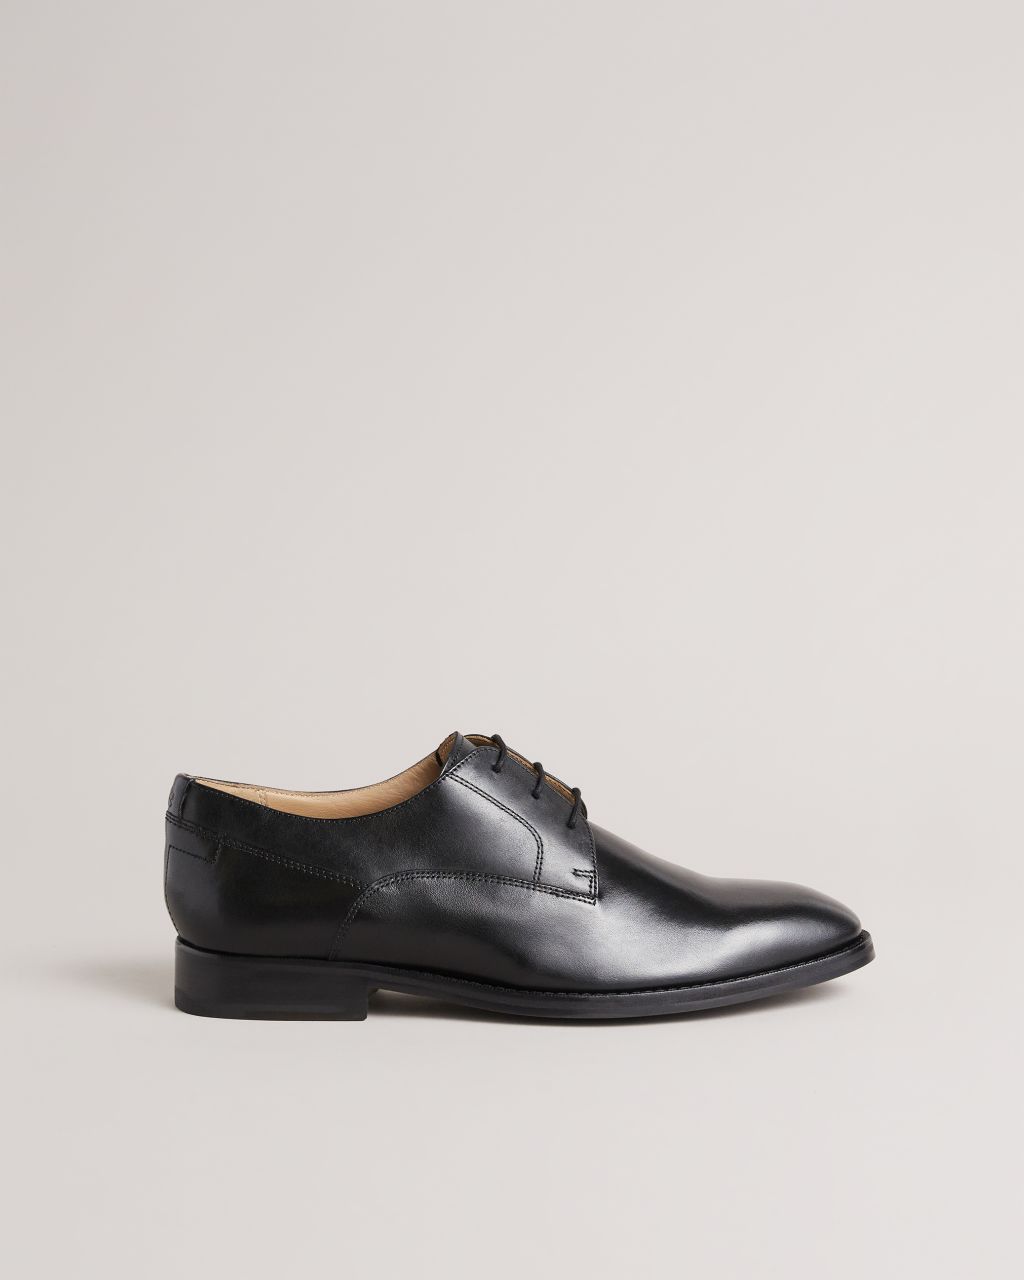 Ted Baker Men's Formal Leather Derby Shoes in Black, Kampten